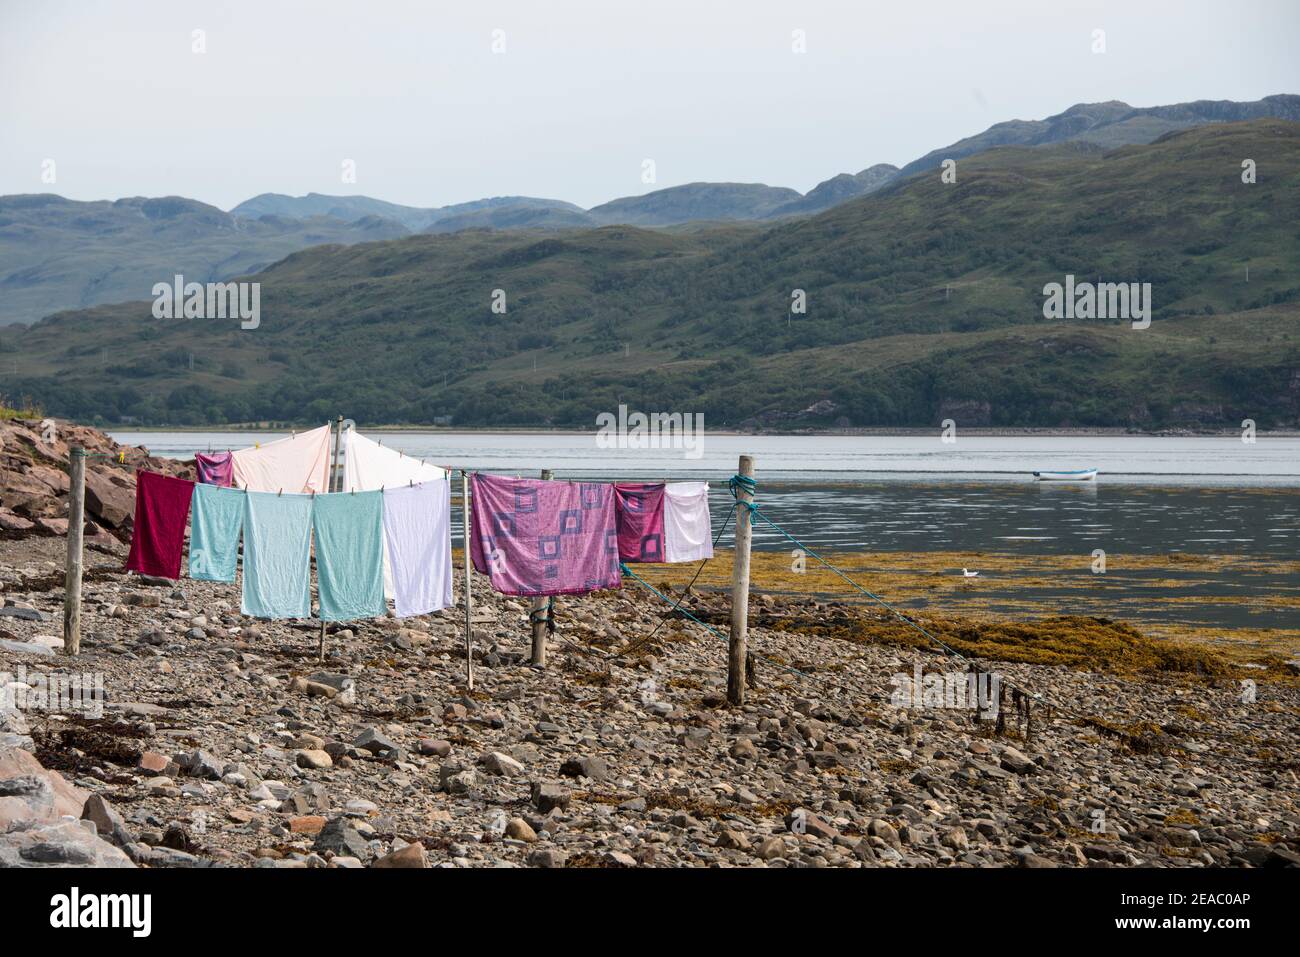 Lavanderia che asciuga alla bassa marea al molo della barca, Scozia Foto Stock